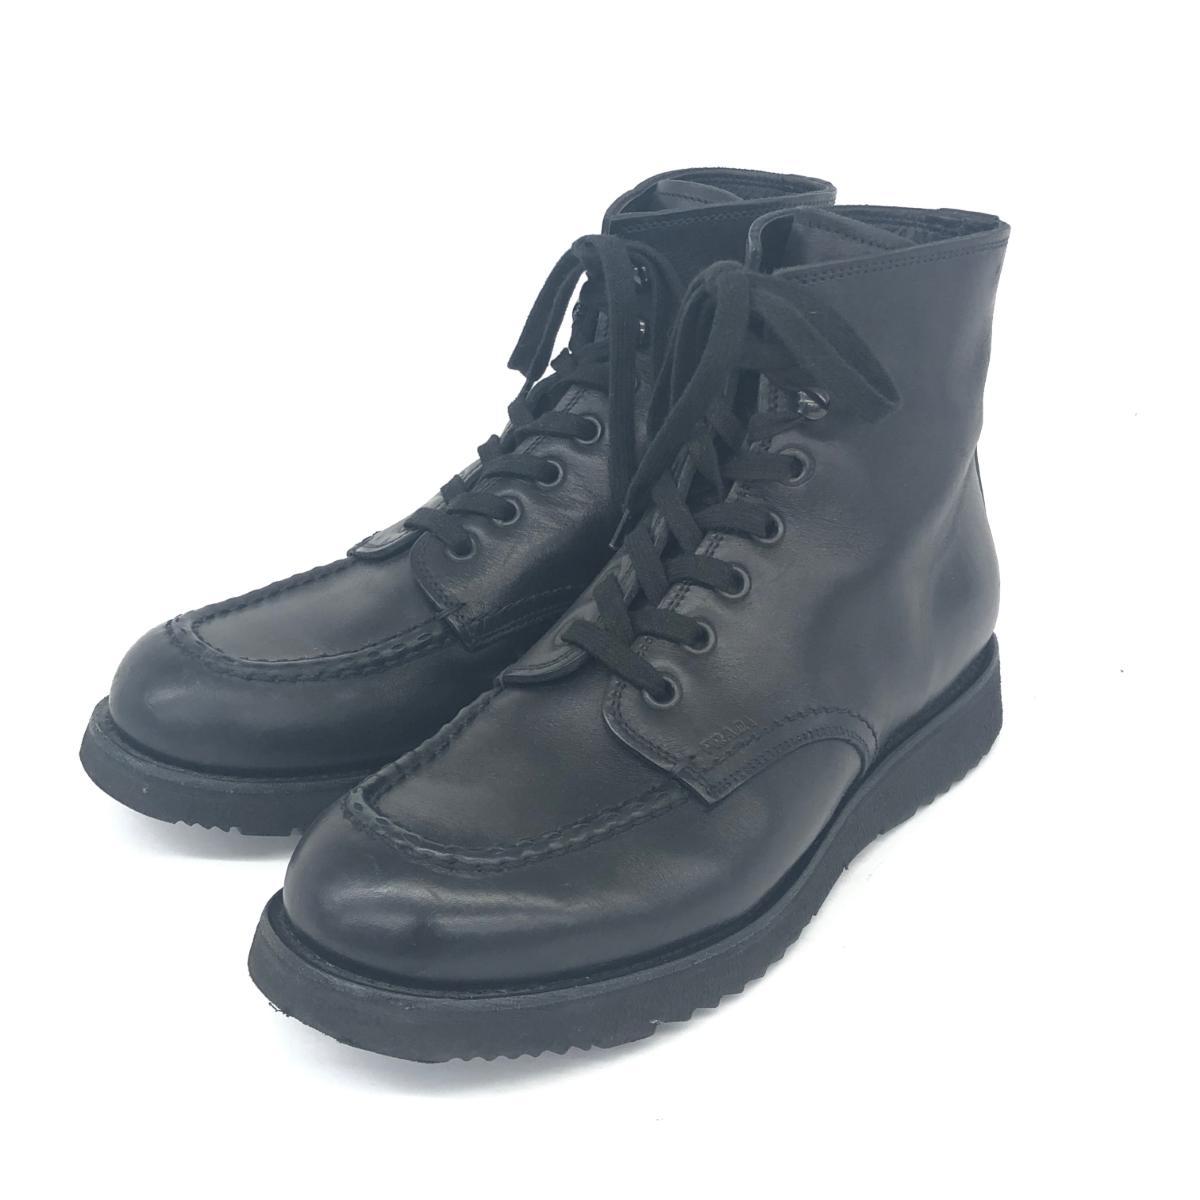 ◆PRADA プラダ レースアップブーツ 9◆ ブラック レザー メンズ 靴 シューズ boots ワークブーツ